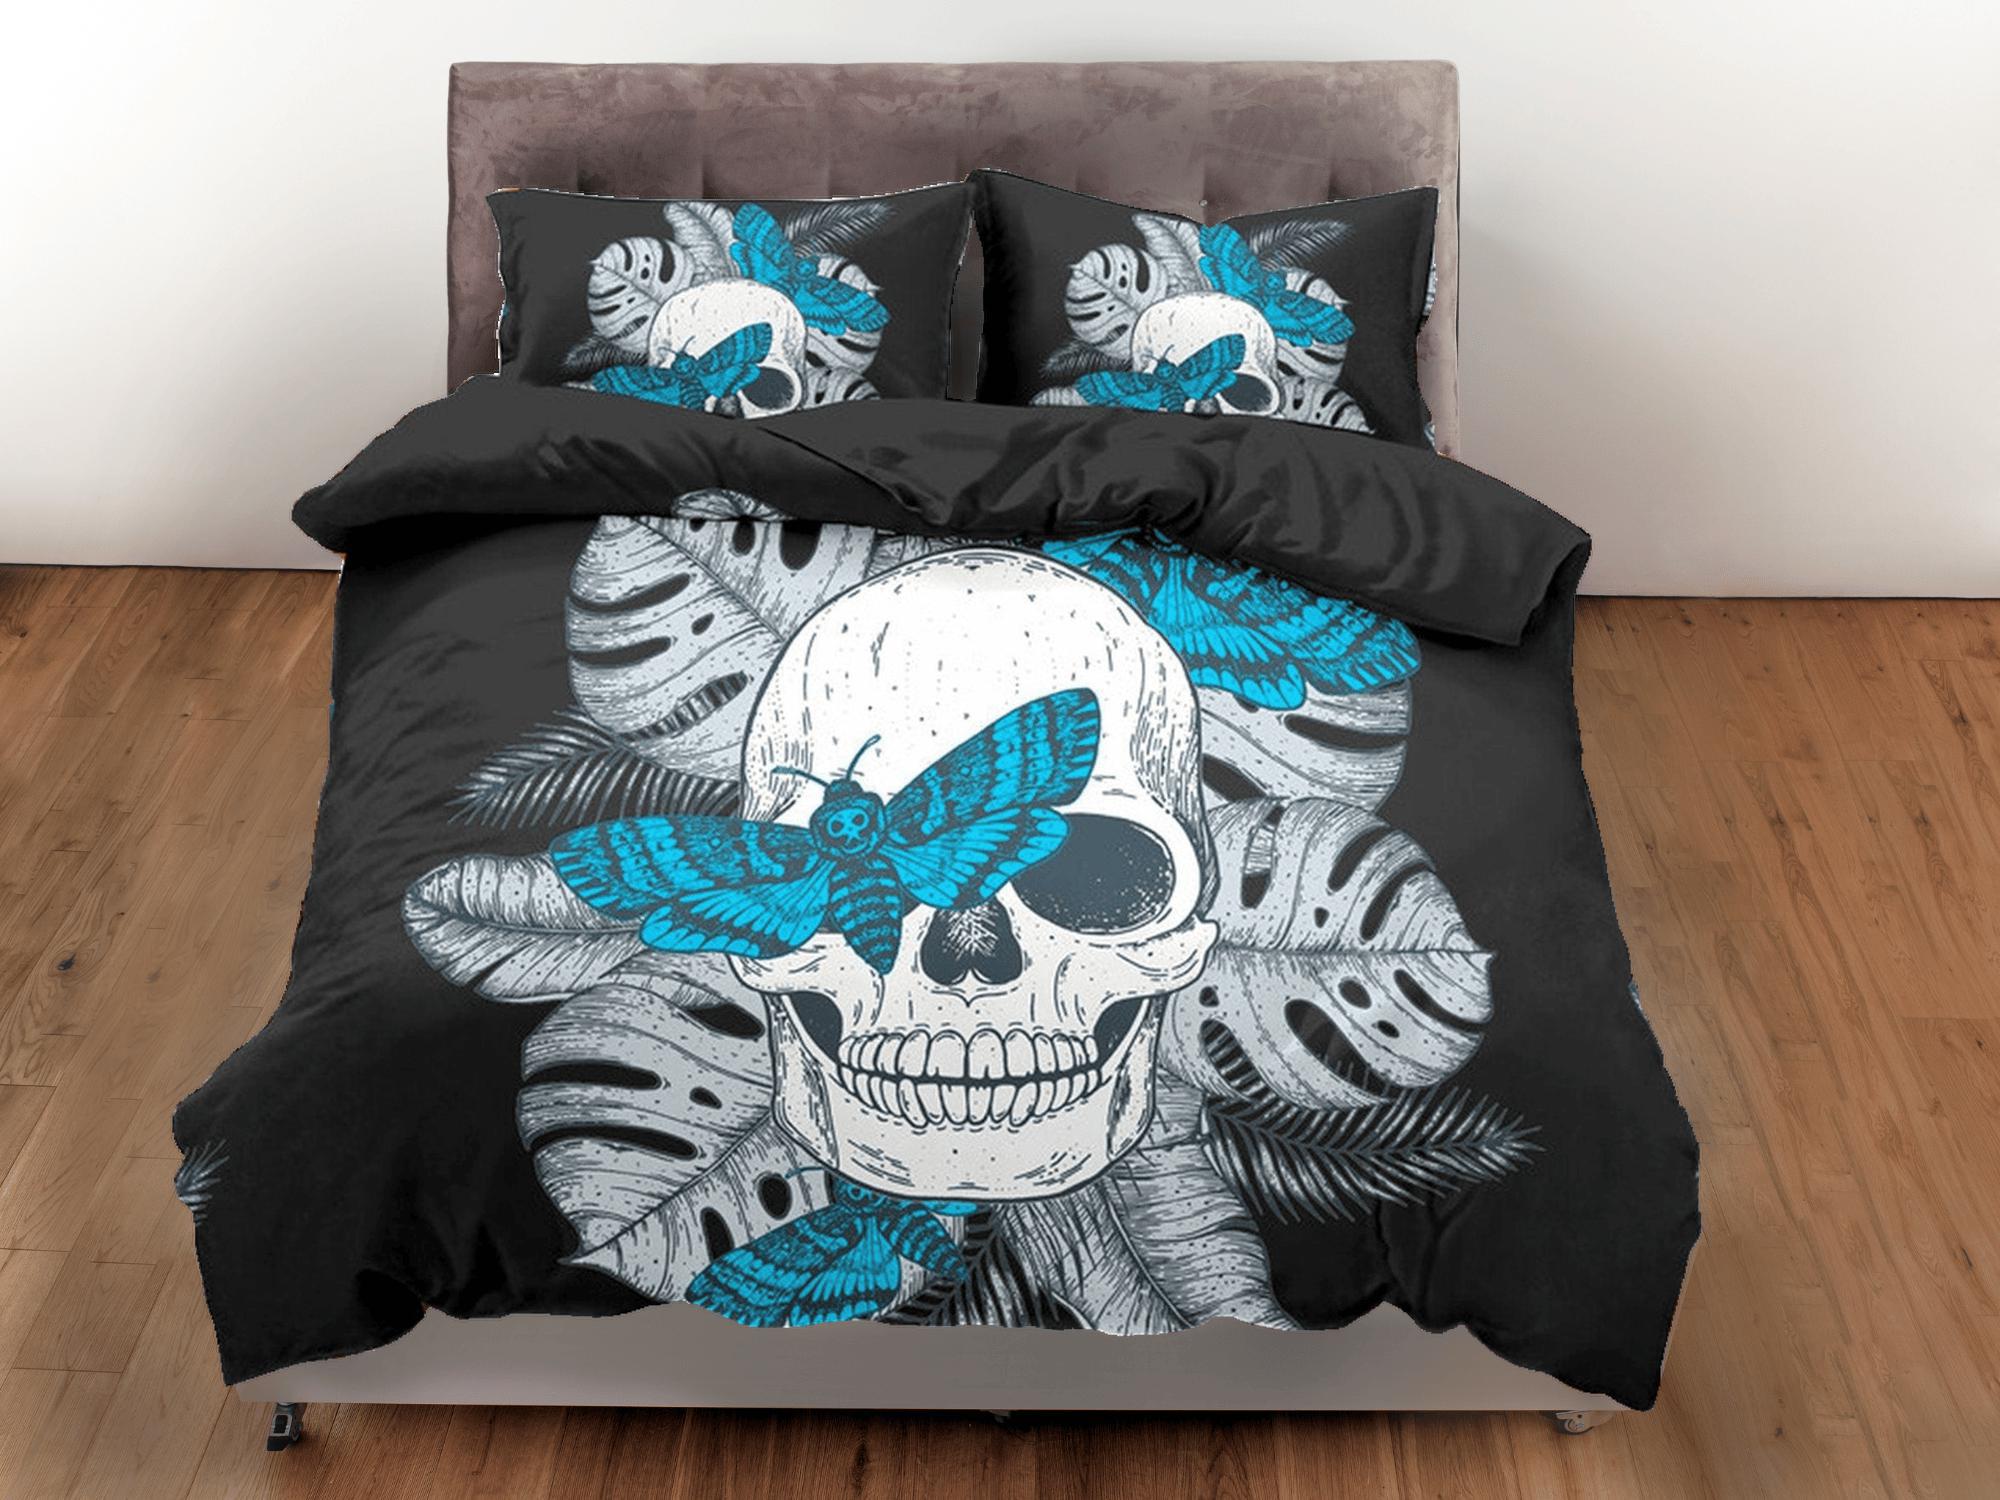 daintyduvet Skull & Moth Black Duvet Cover Set Bedspread, Dorm Bedding with Pillowcase